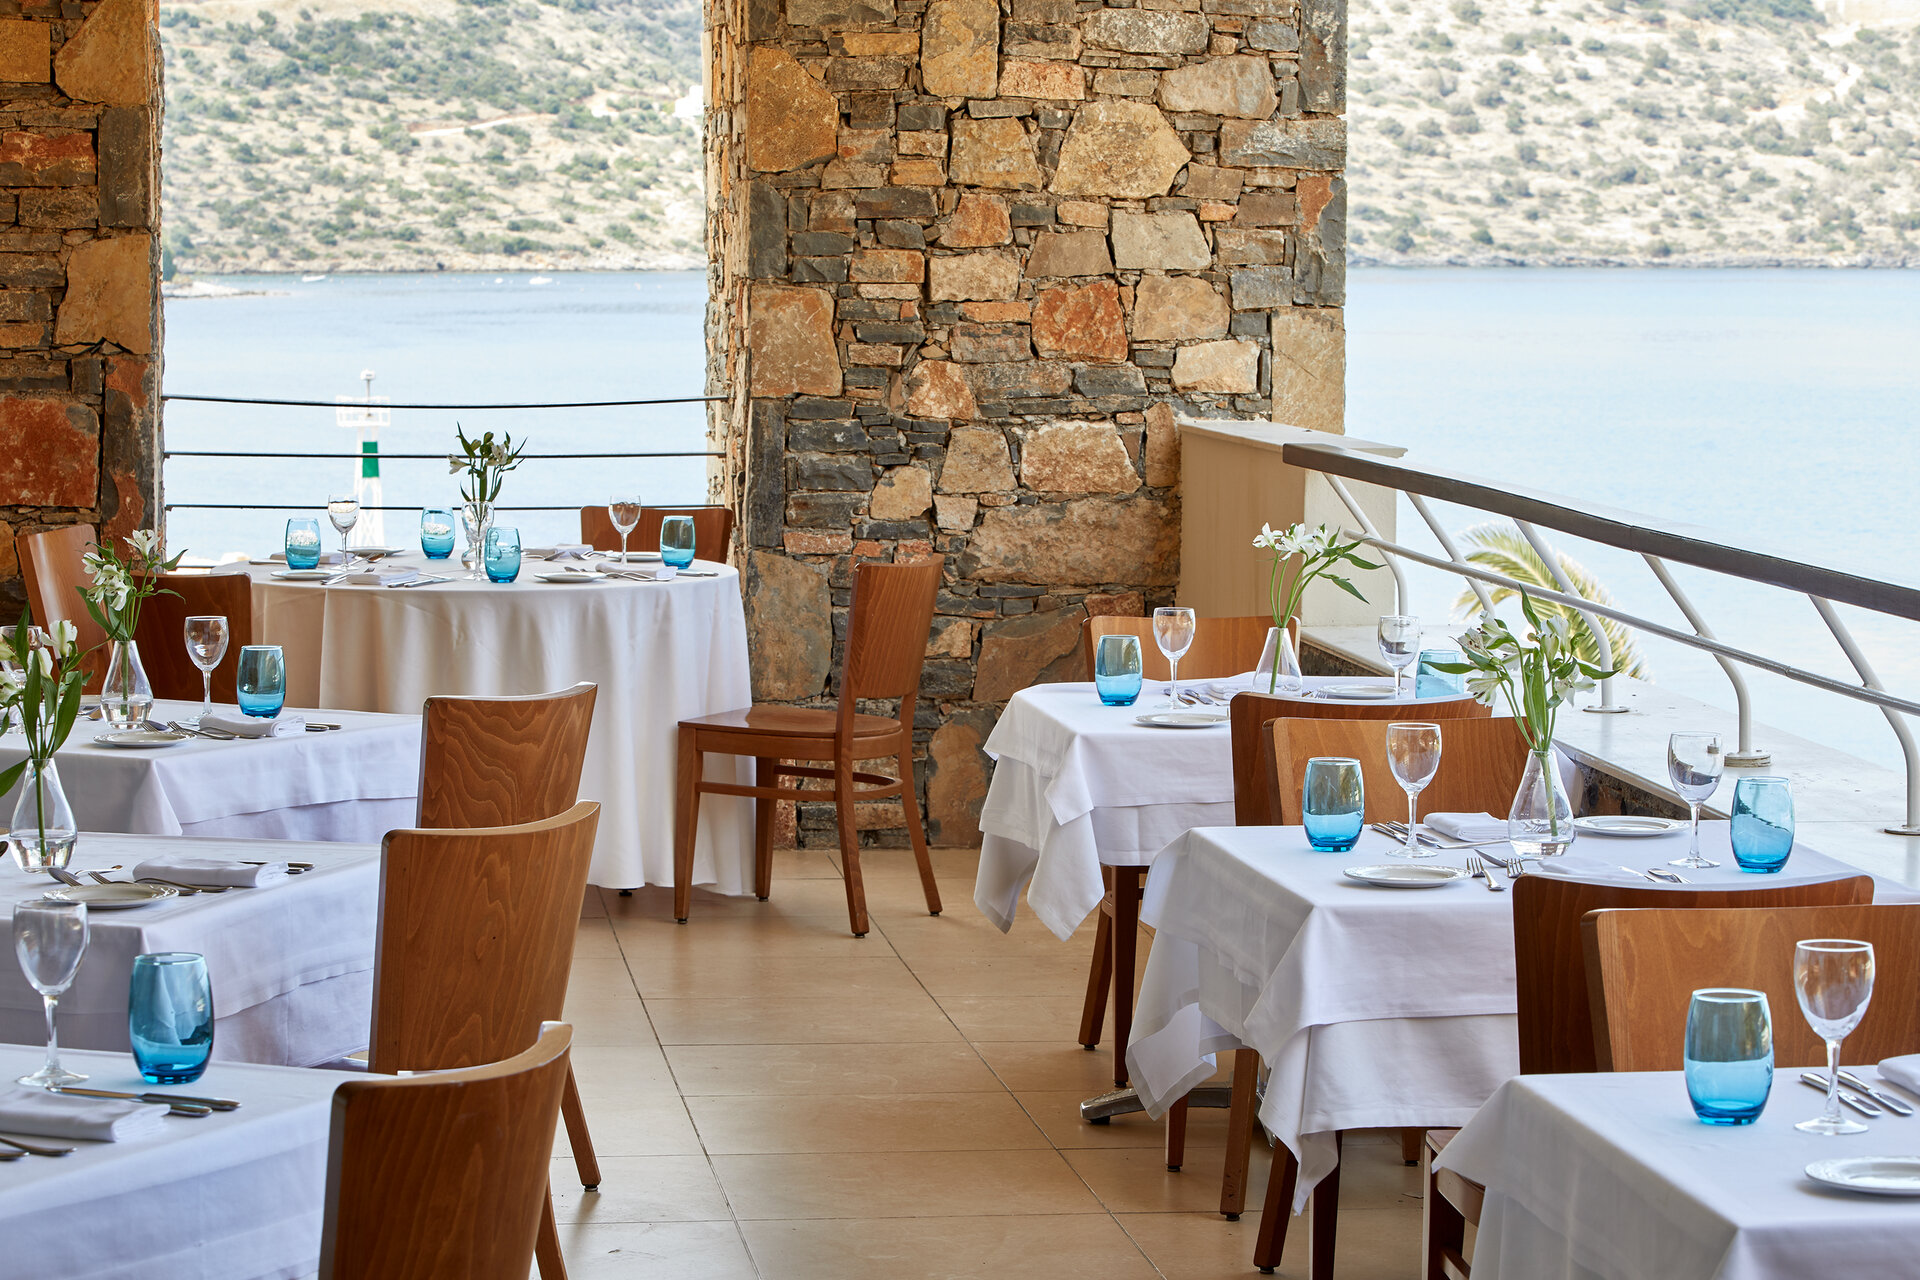 Wyndham Grand Crete Mirabello Bay: Amalthea Main Restaurant